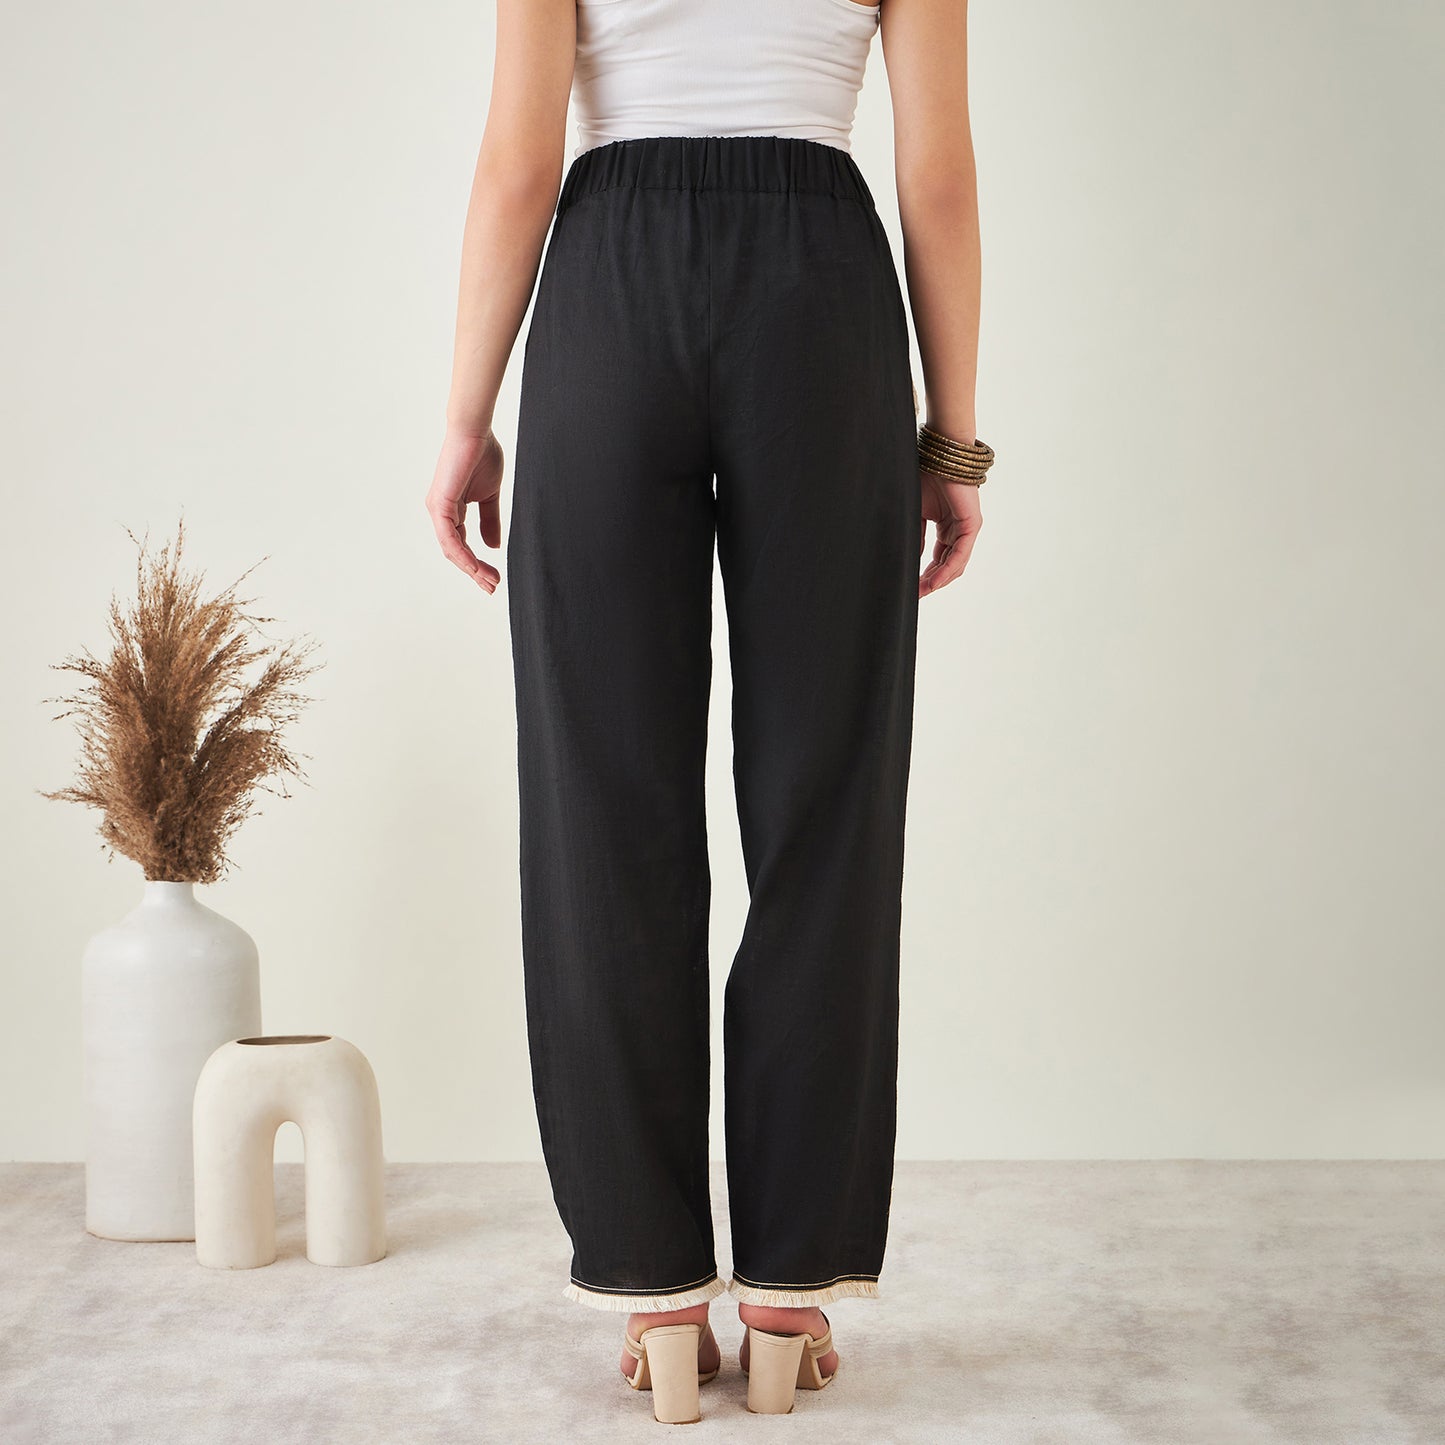 Black Linen Pants with Lace Detail